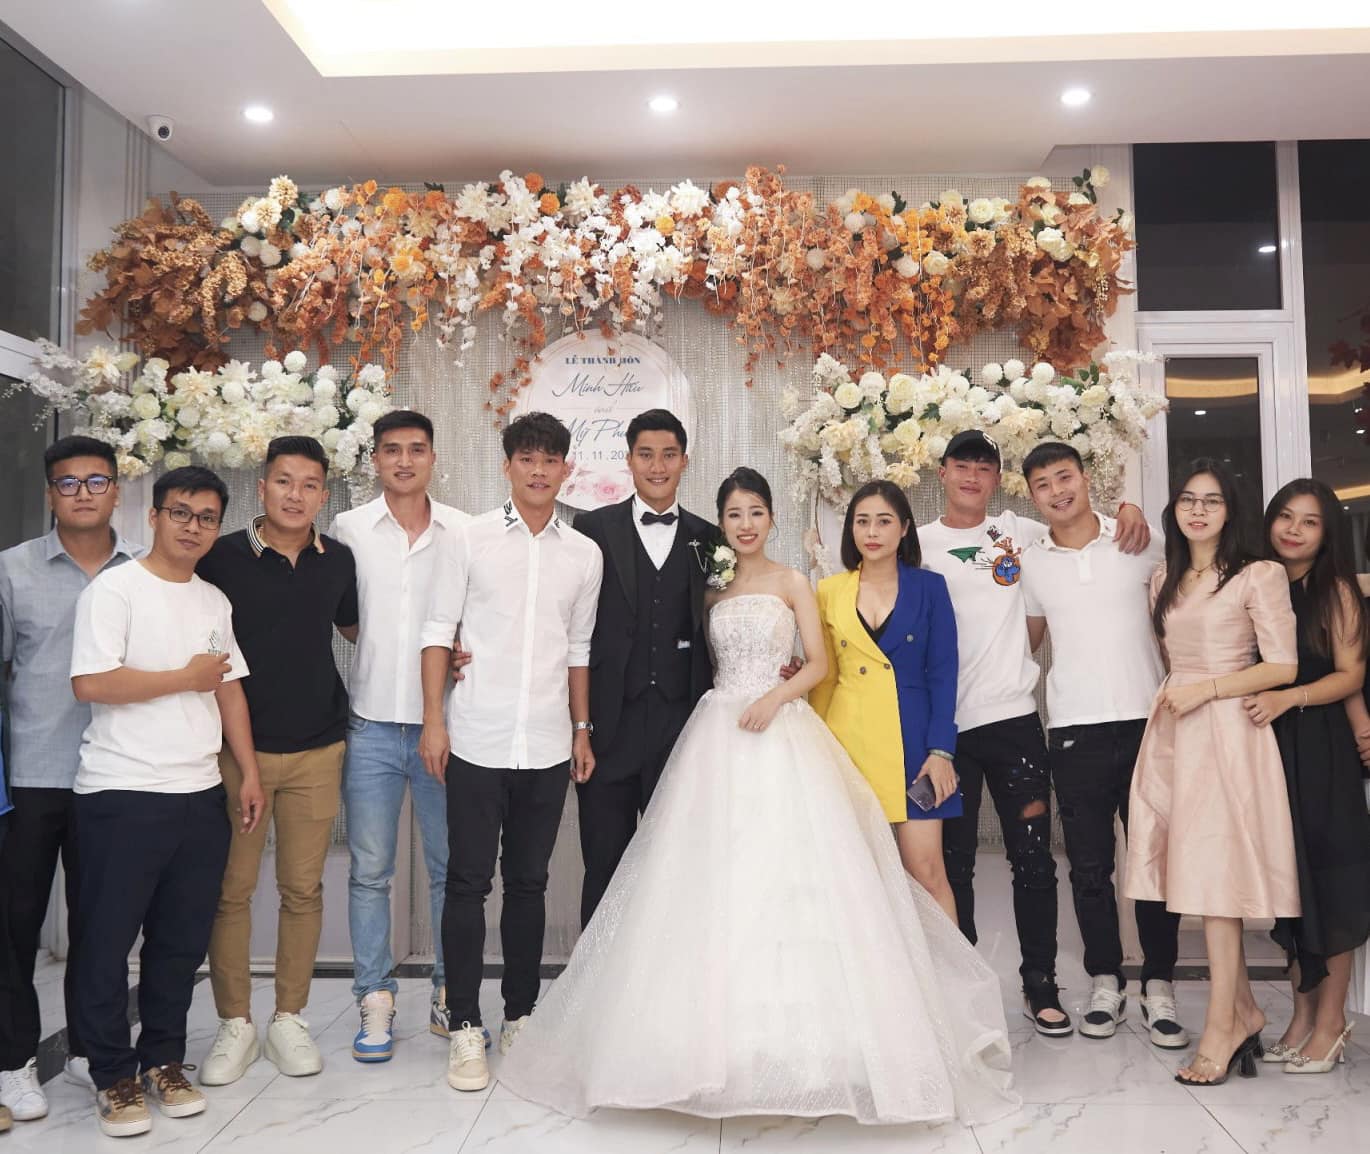 Cựu thủ môn U20 Việt Nam lấy vợ giáo viên, đám cưới không linh đình như Đoàn Văn Hậu nhưng trọn vẹn hạnh phúc- Ảnh 2.